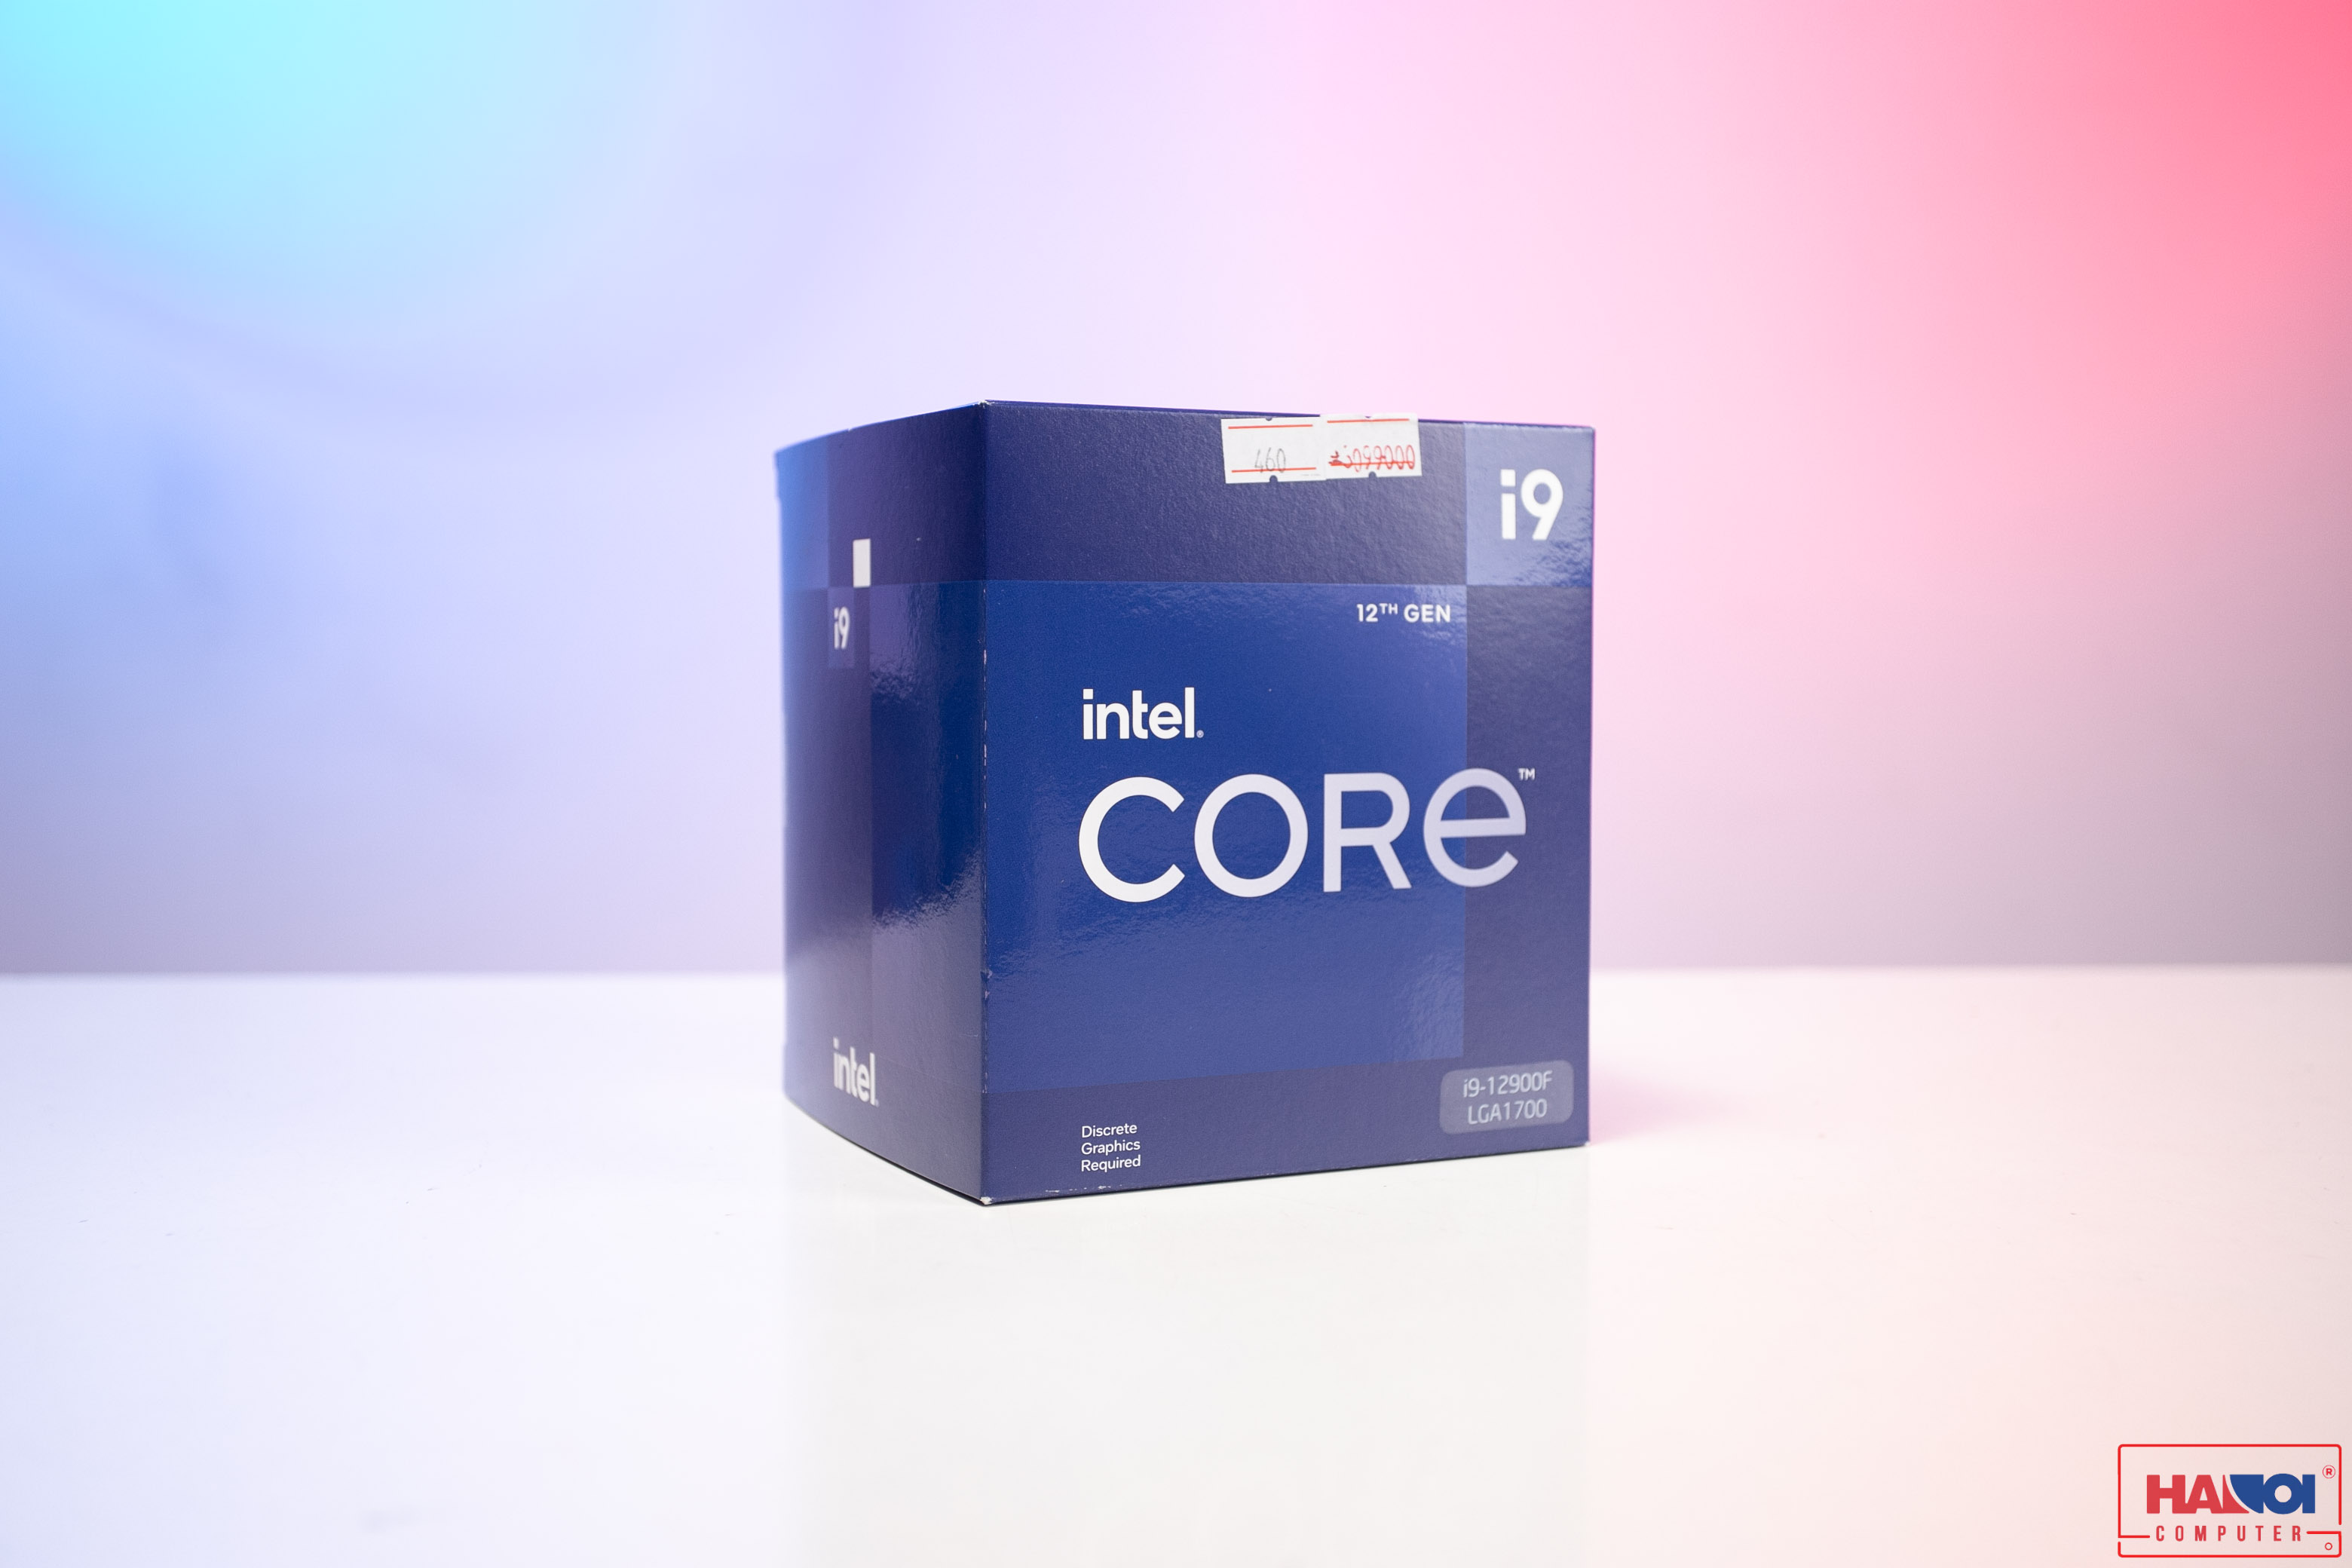 CPU Intel Core i9-12900F (2.4GHz turbo up to 5.1Ghz, 16 nhân 24 luồng, 30MB Cache, 65W) - Socket Intel LGA 1700/Alder Lake)